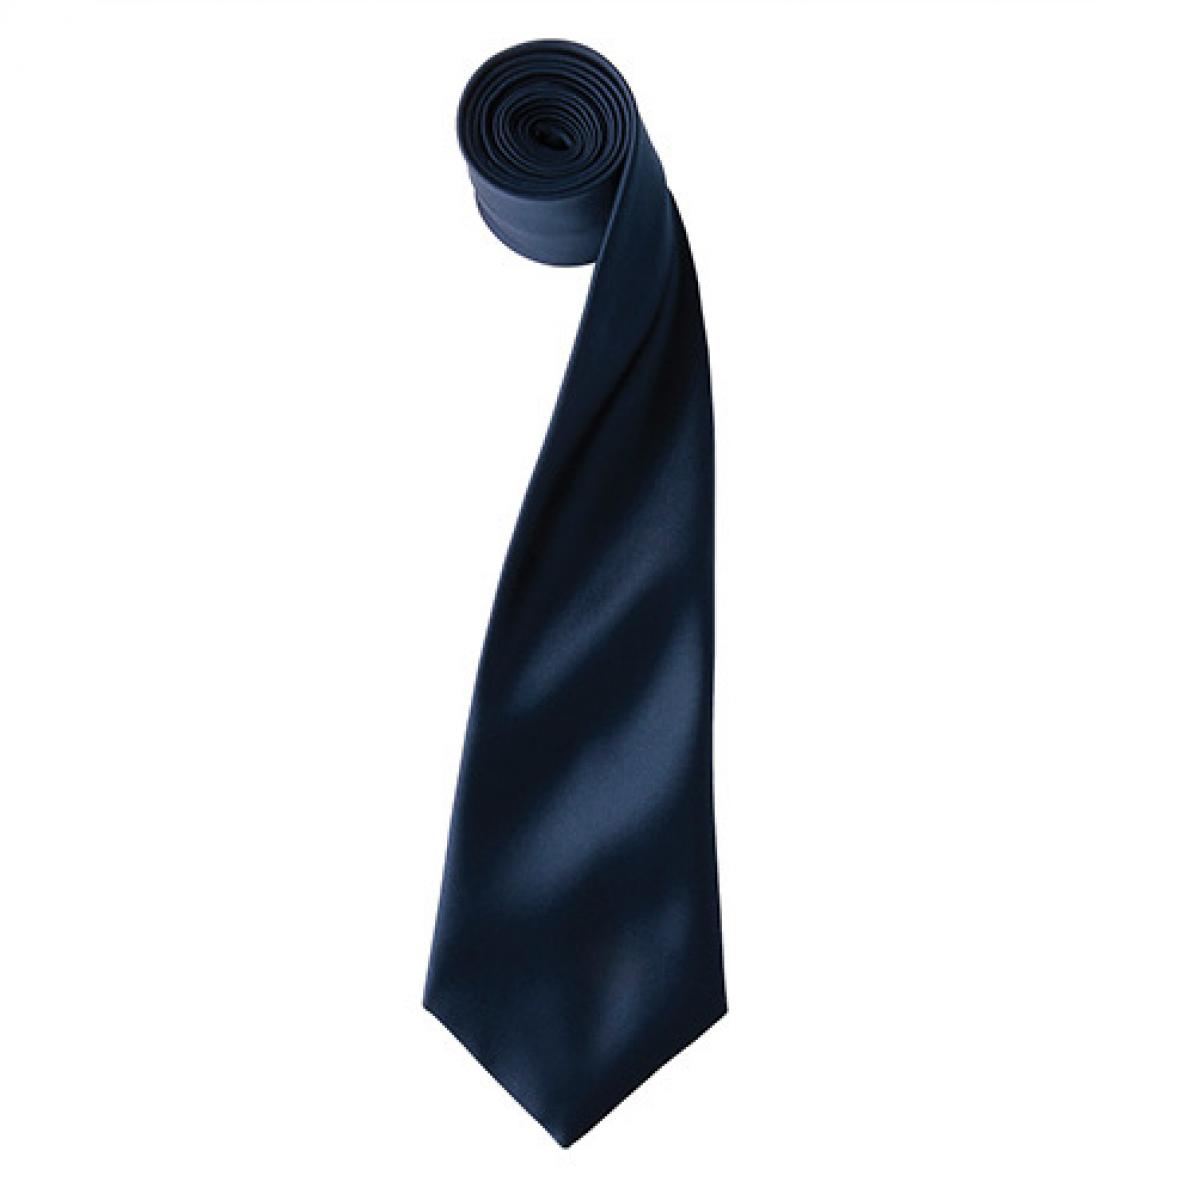 Hersteller: Premier Workwear Herstellernummer: PR750 Artikelbezeichnung: Satin Tie ´Colours´ / 144 x 8,5 cm Farbe: Navy (ca. Pantone 2766)